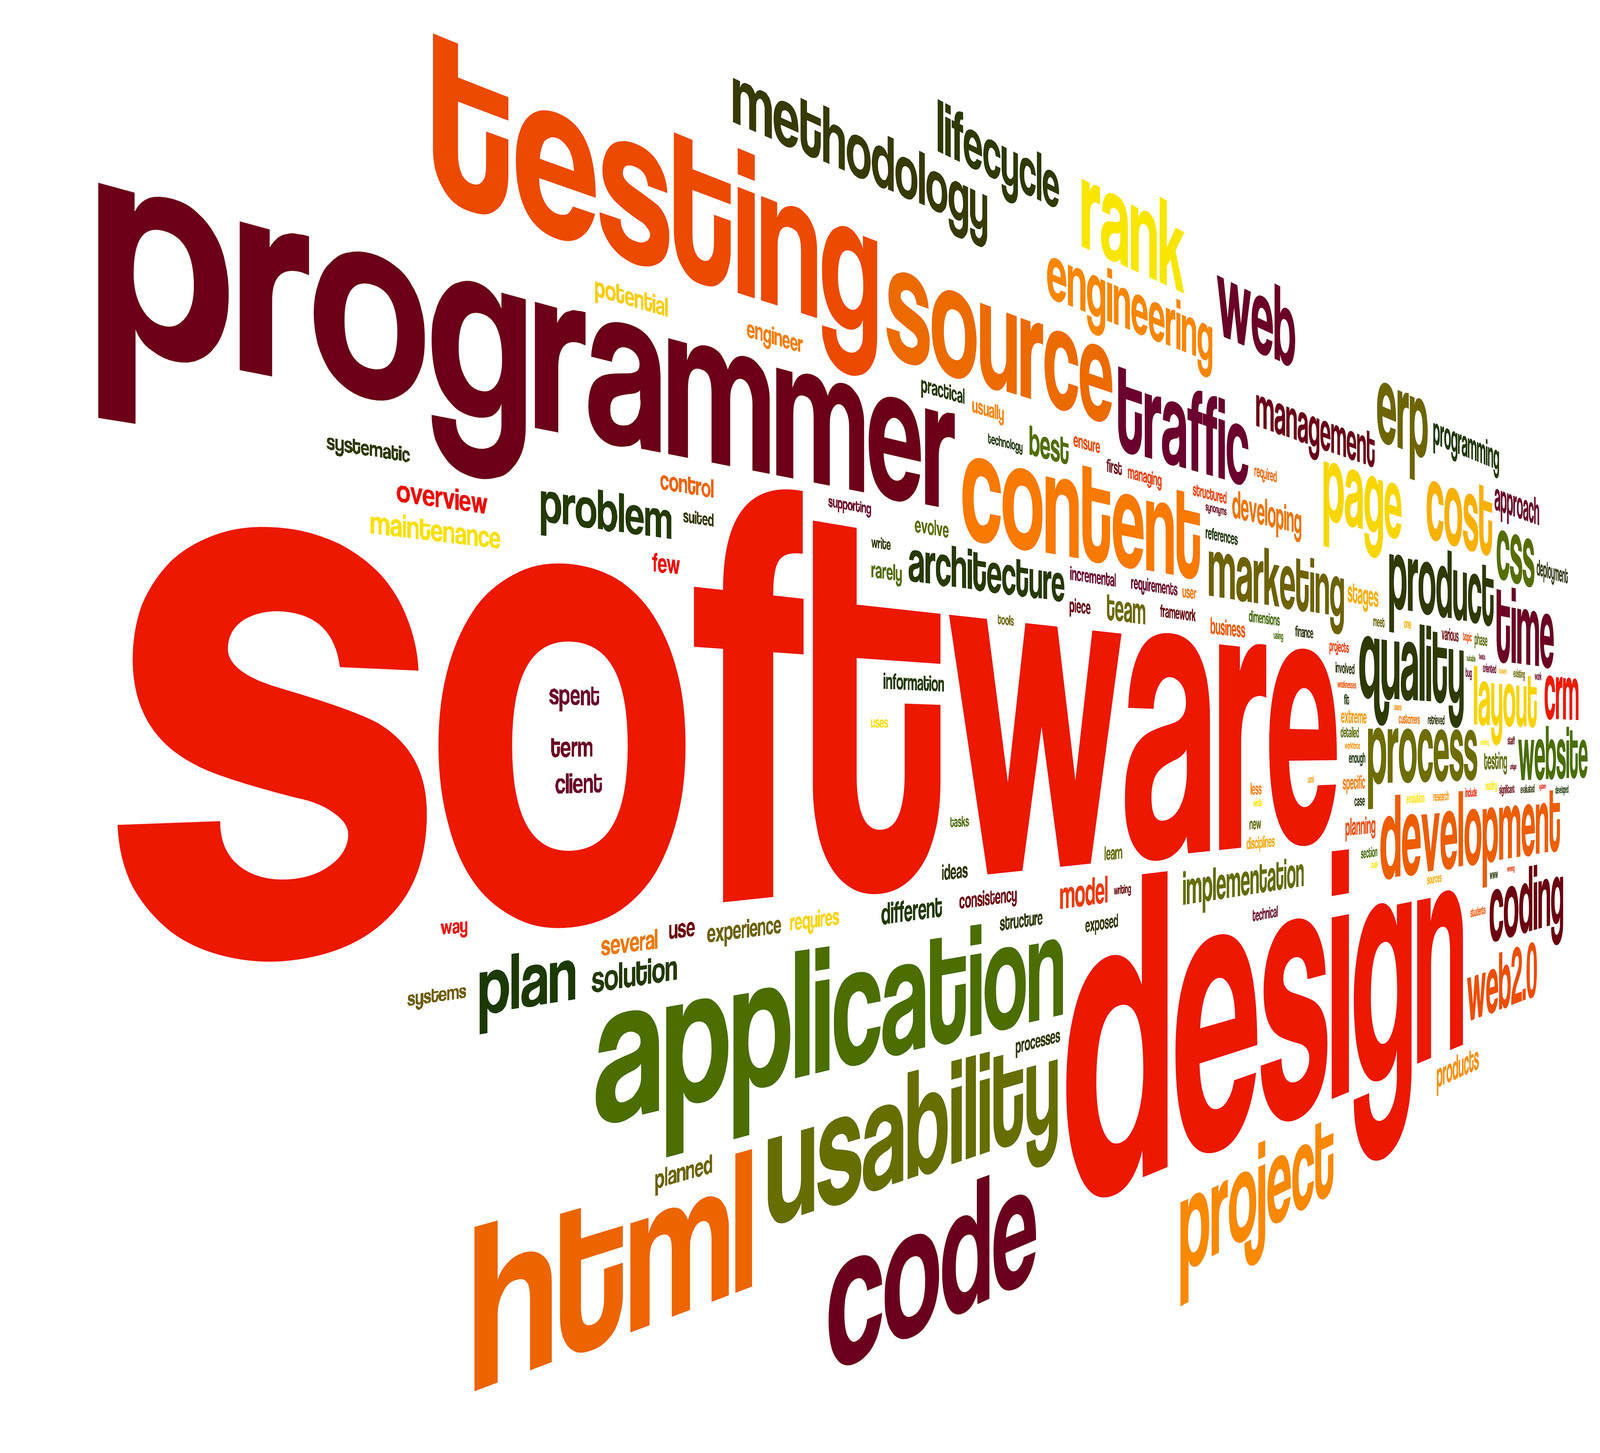 Desarrollo de software